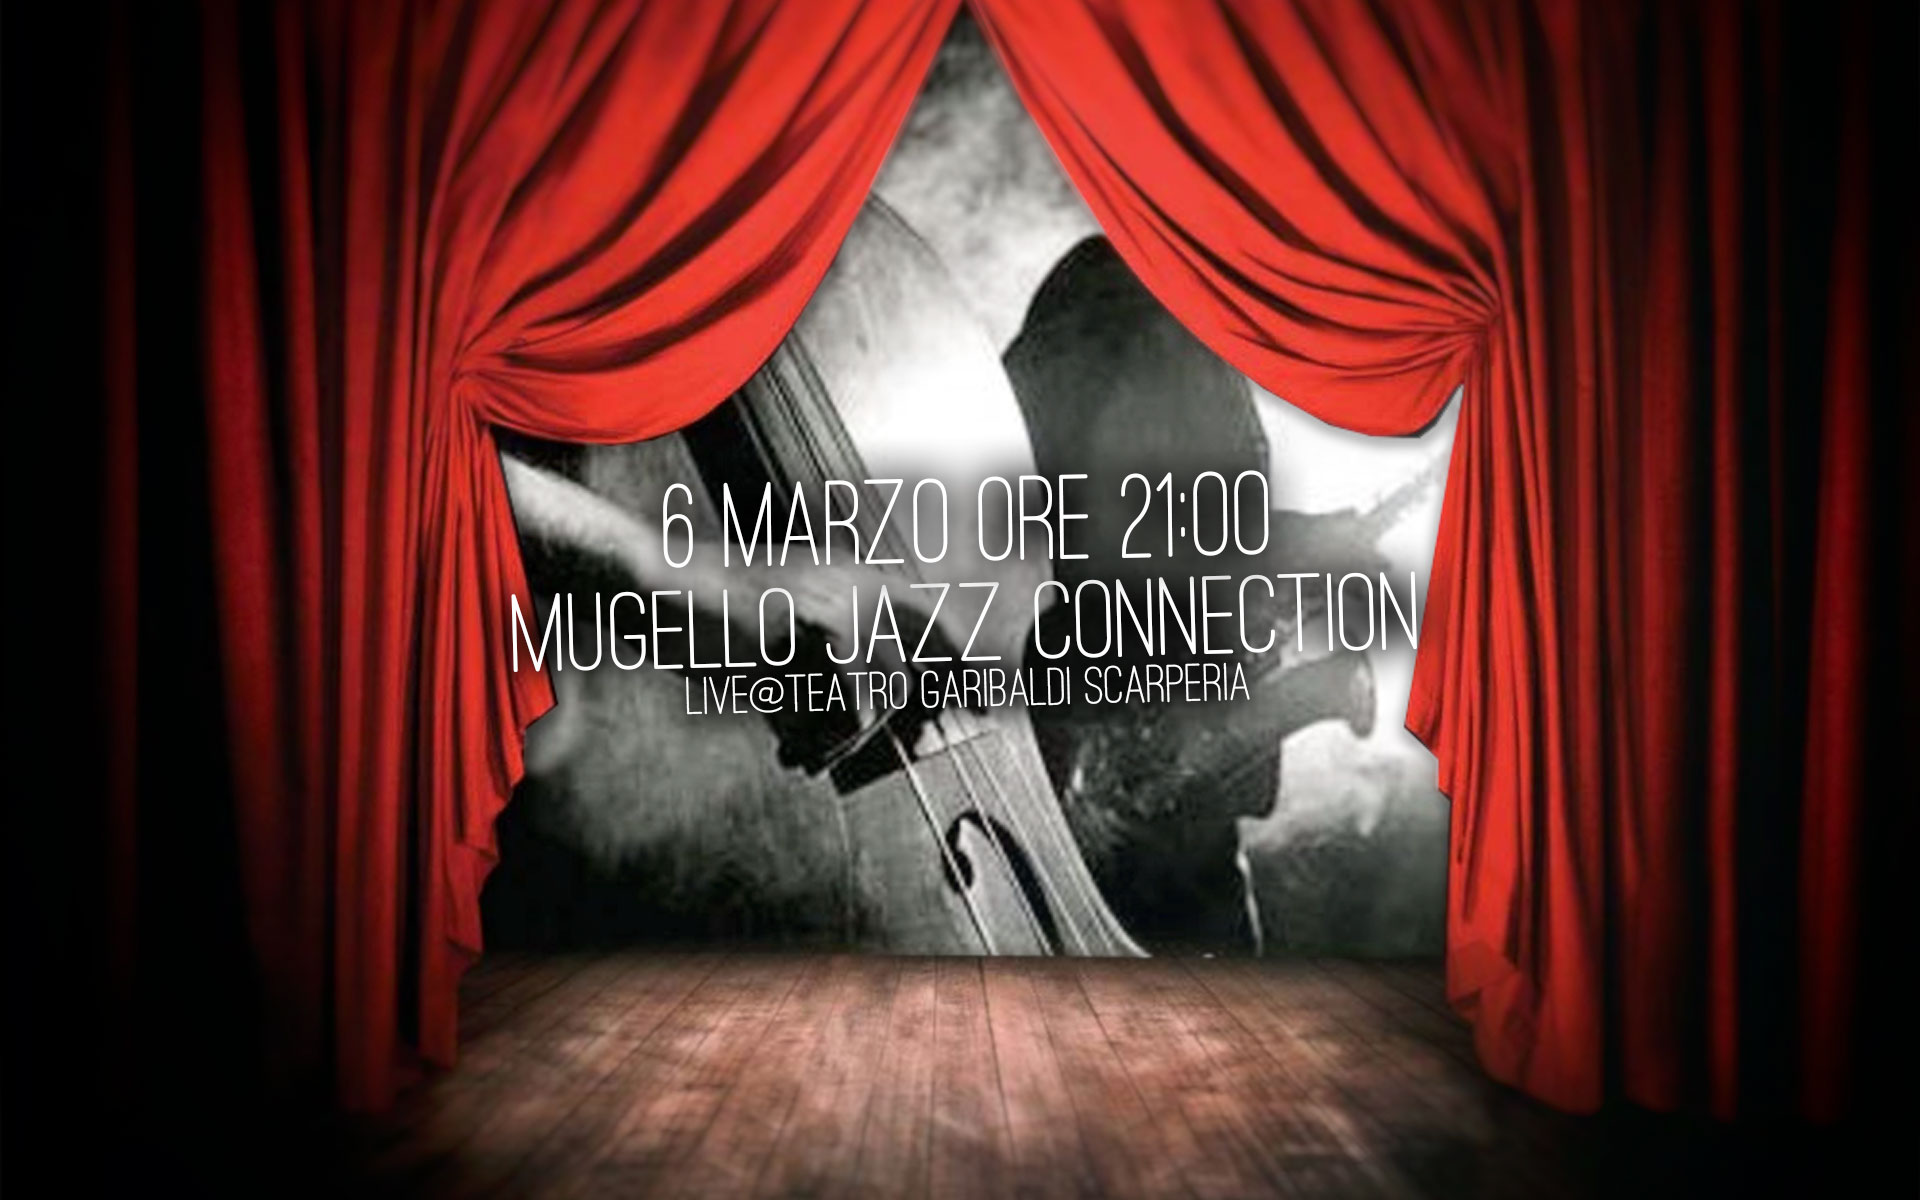 Mugello Jazz Connection live al teatro Garibaldi – 6 MARZO Scarperia